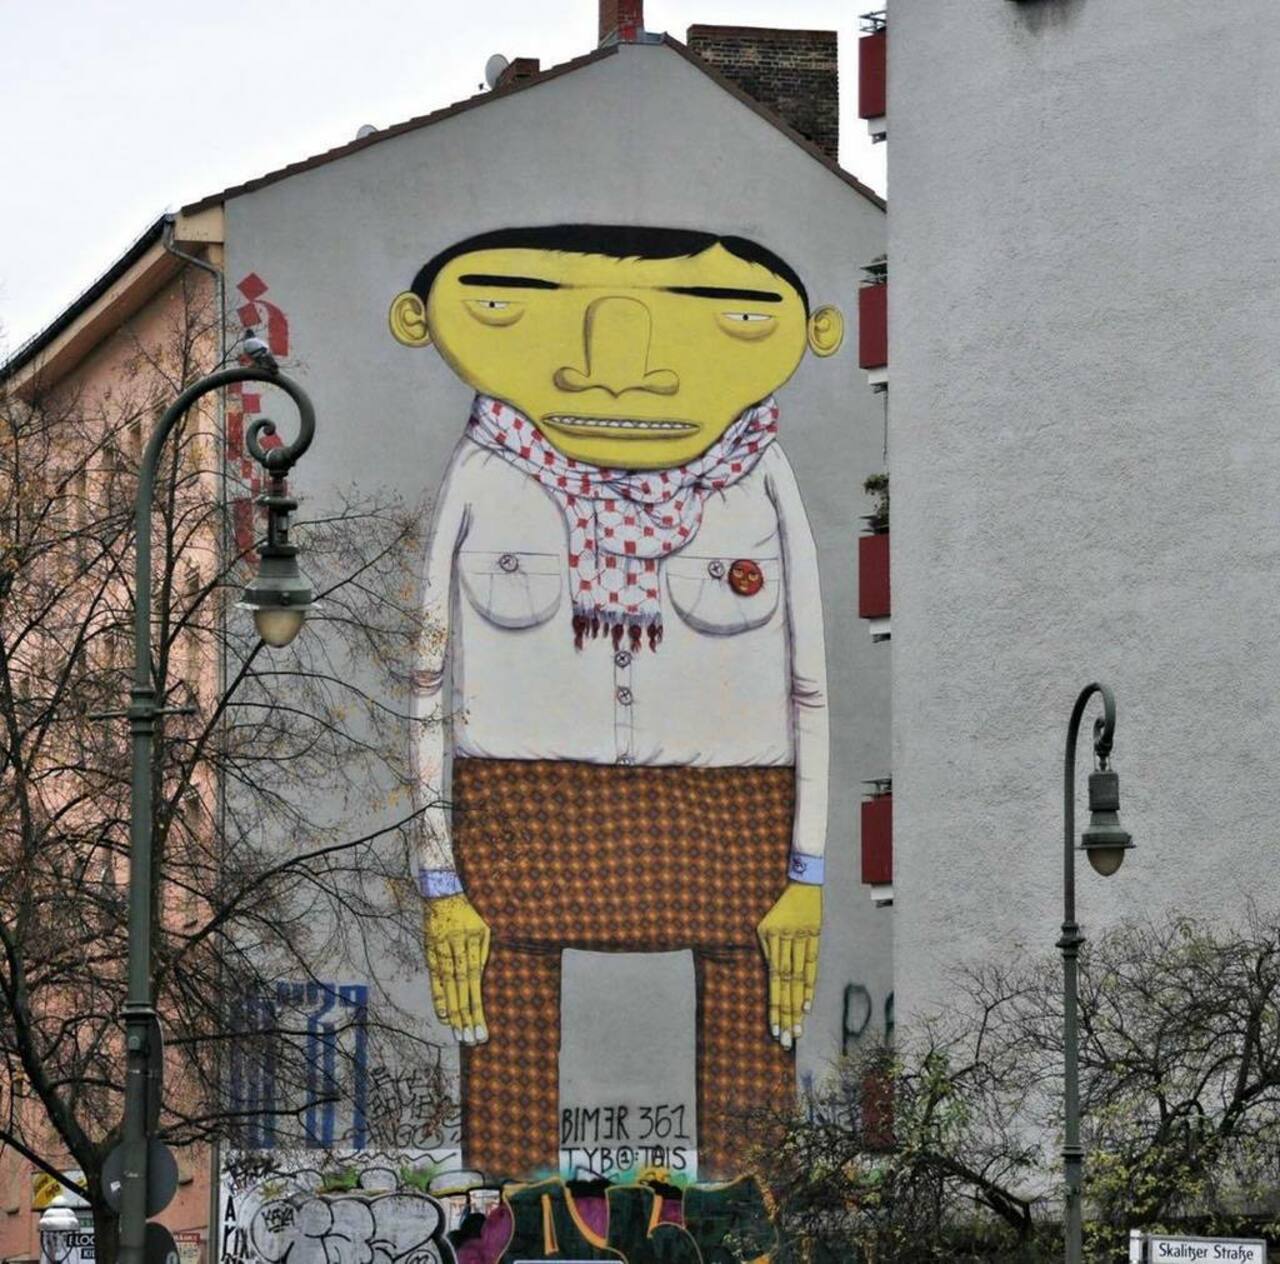 #berlin #mural #graffiti #streetart #streetartberlin #art #kunst #arte #germany #deutschland #ikbineinberliner #the… https://t.co/K4827B6N2a